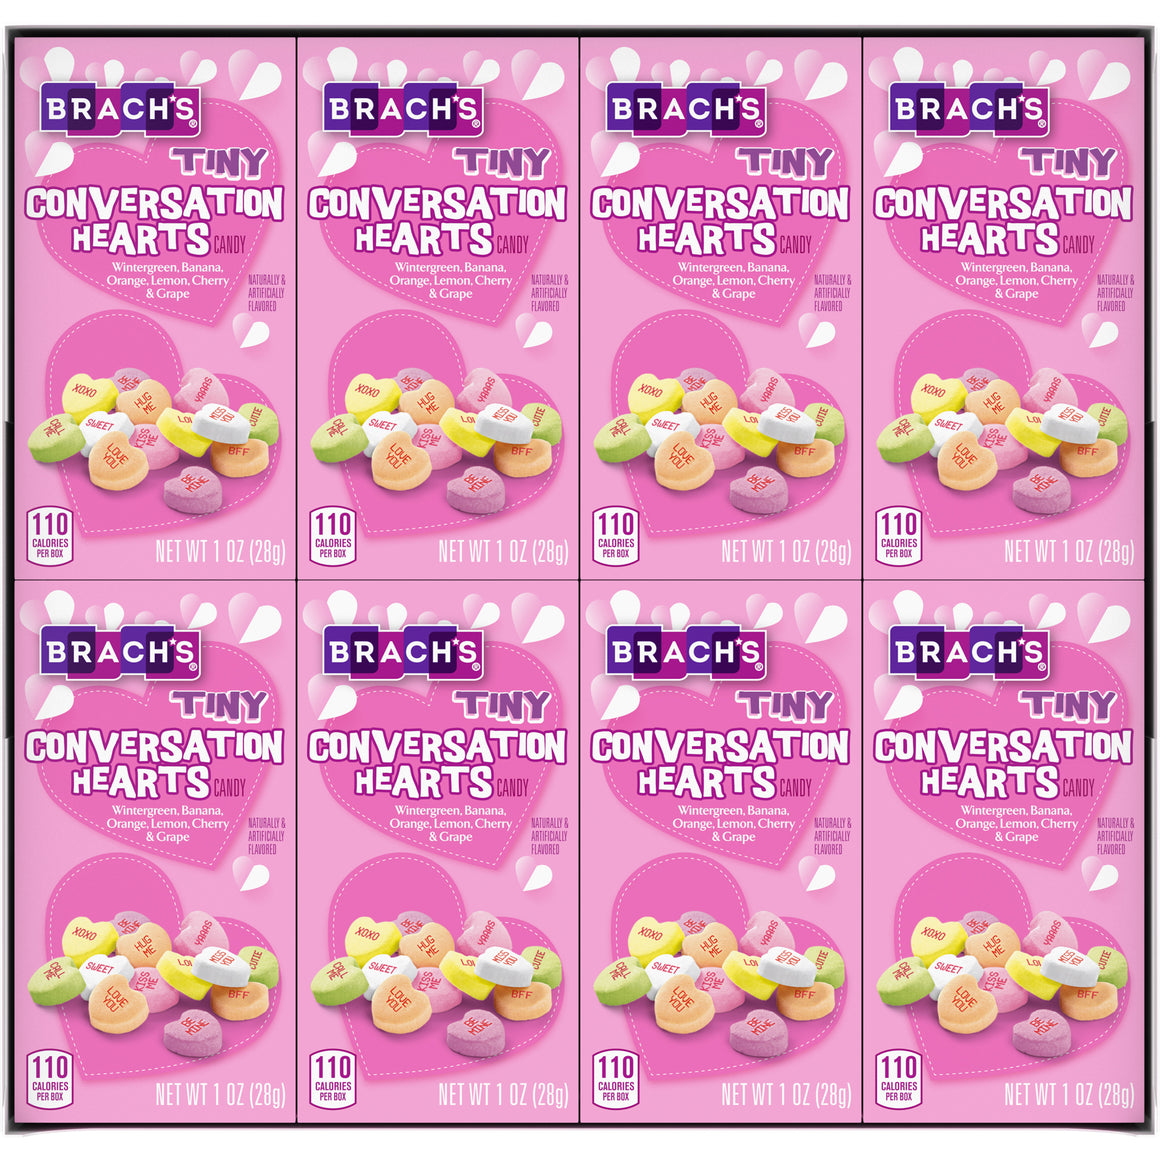 Brach's® Wisecracks Conversation Hearts Candy, 8.5 oz - Fred Meyer